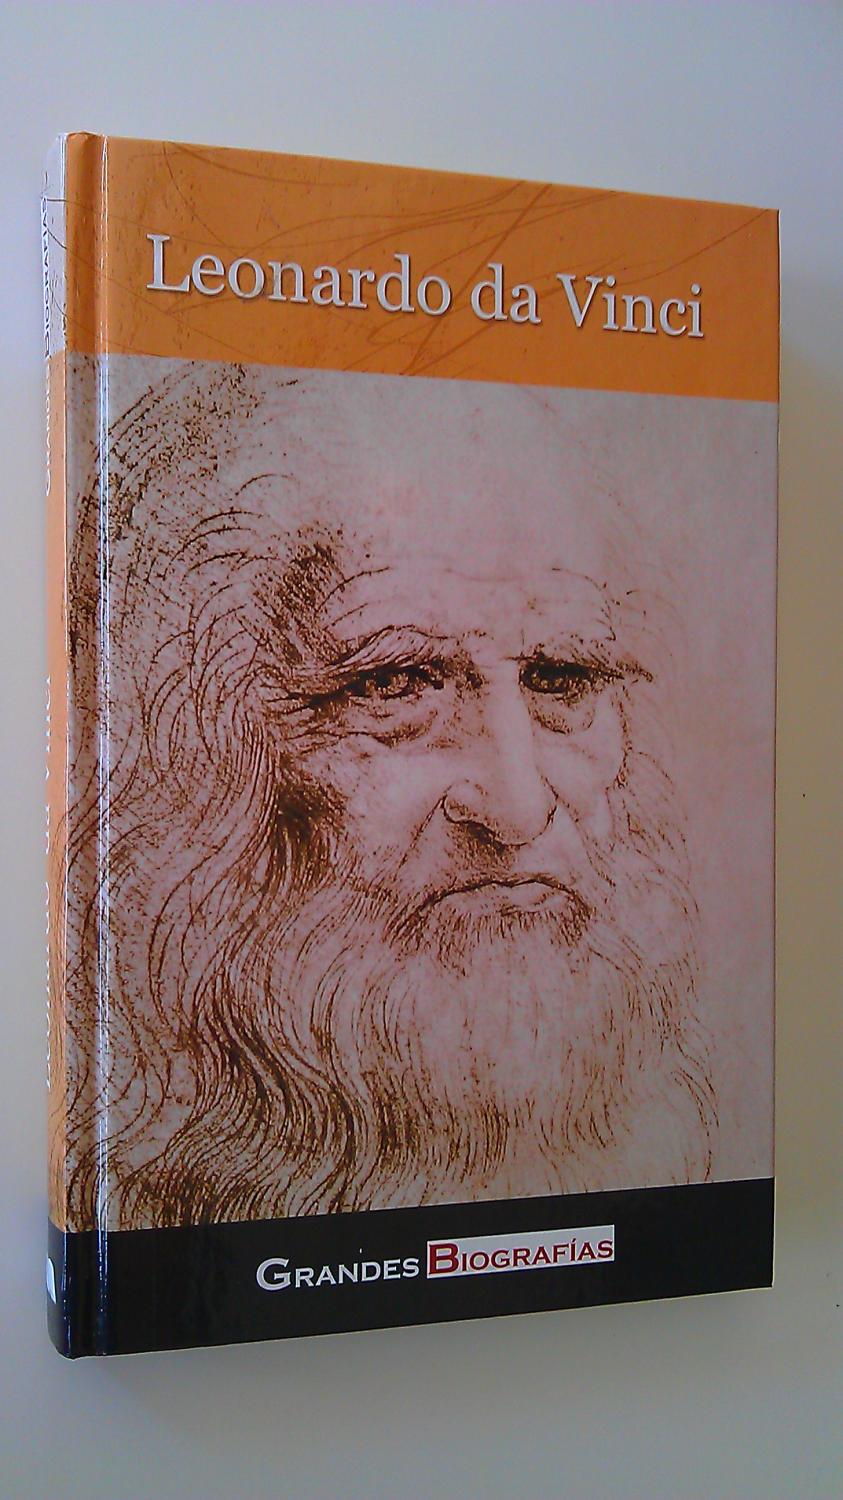 Leonardo Da Vinci (Grandes Biografias )